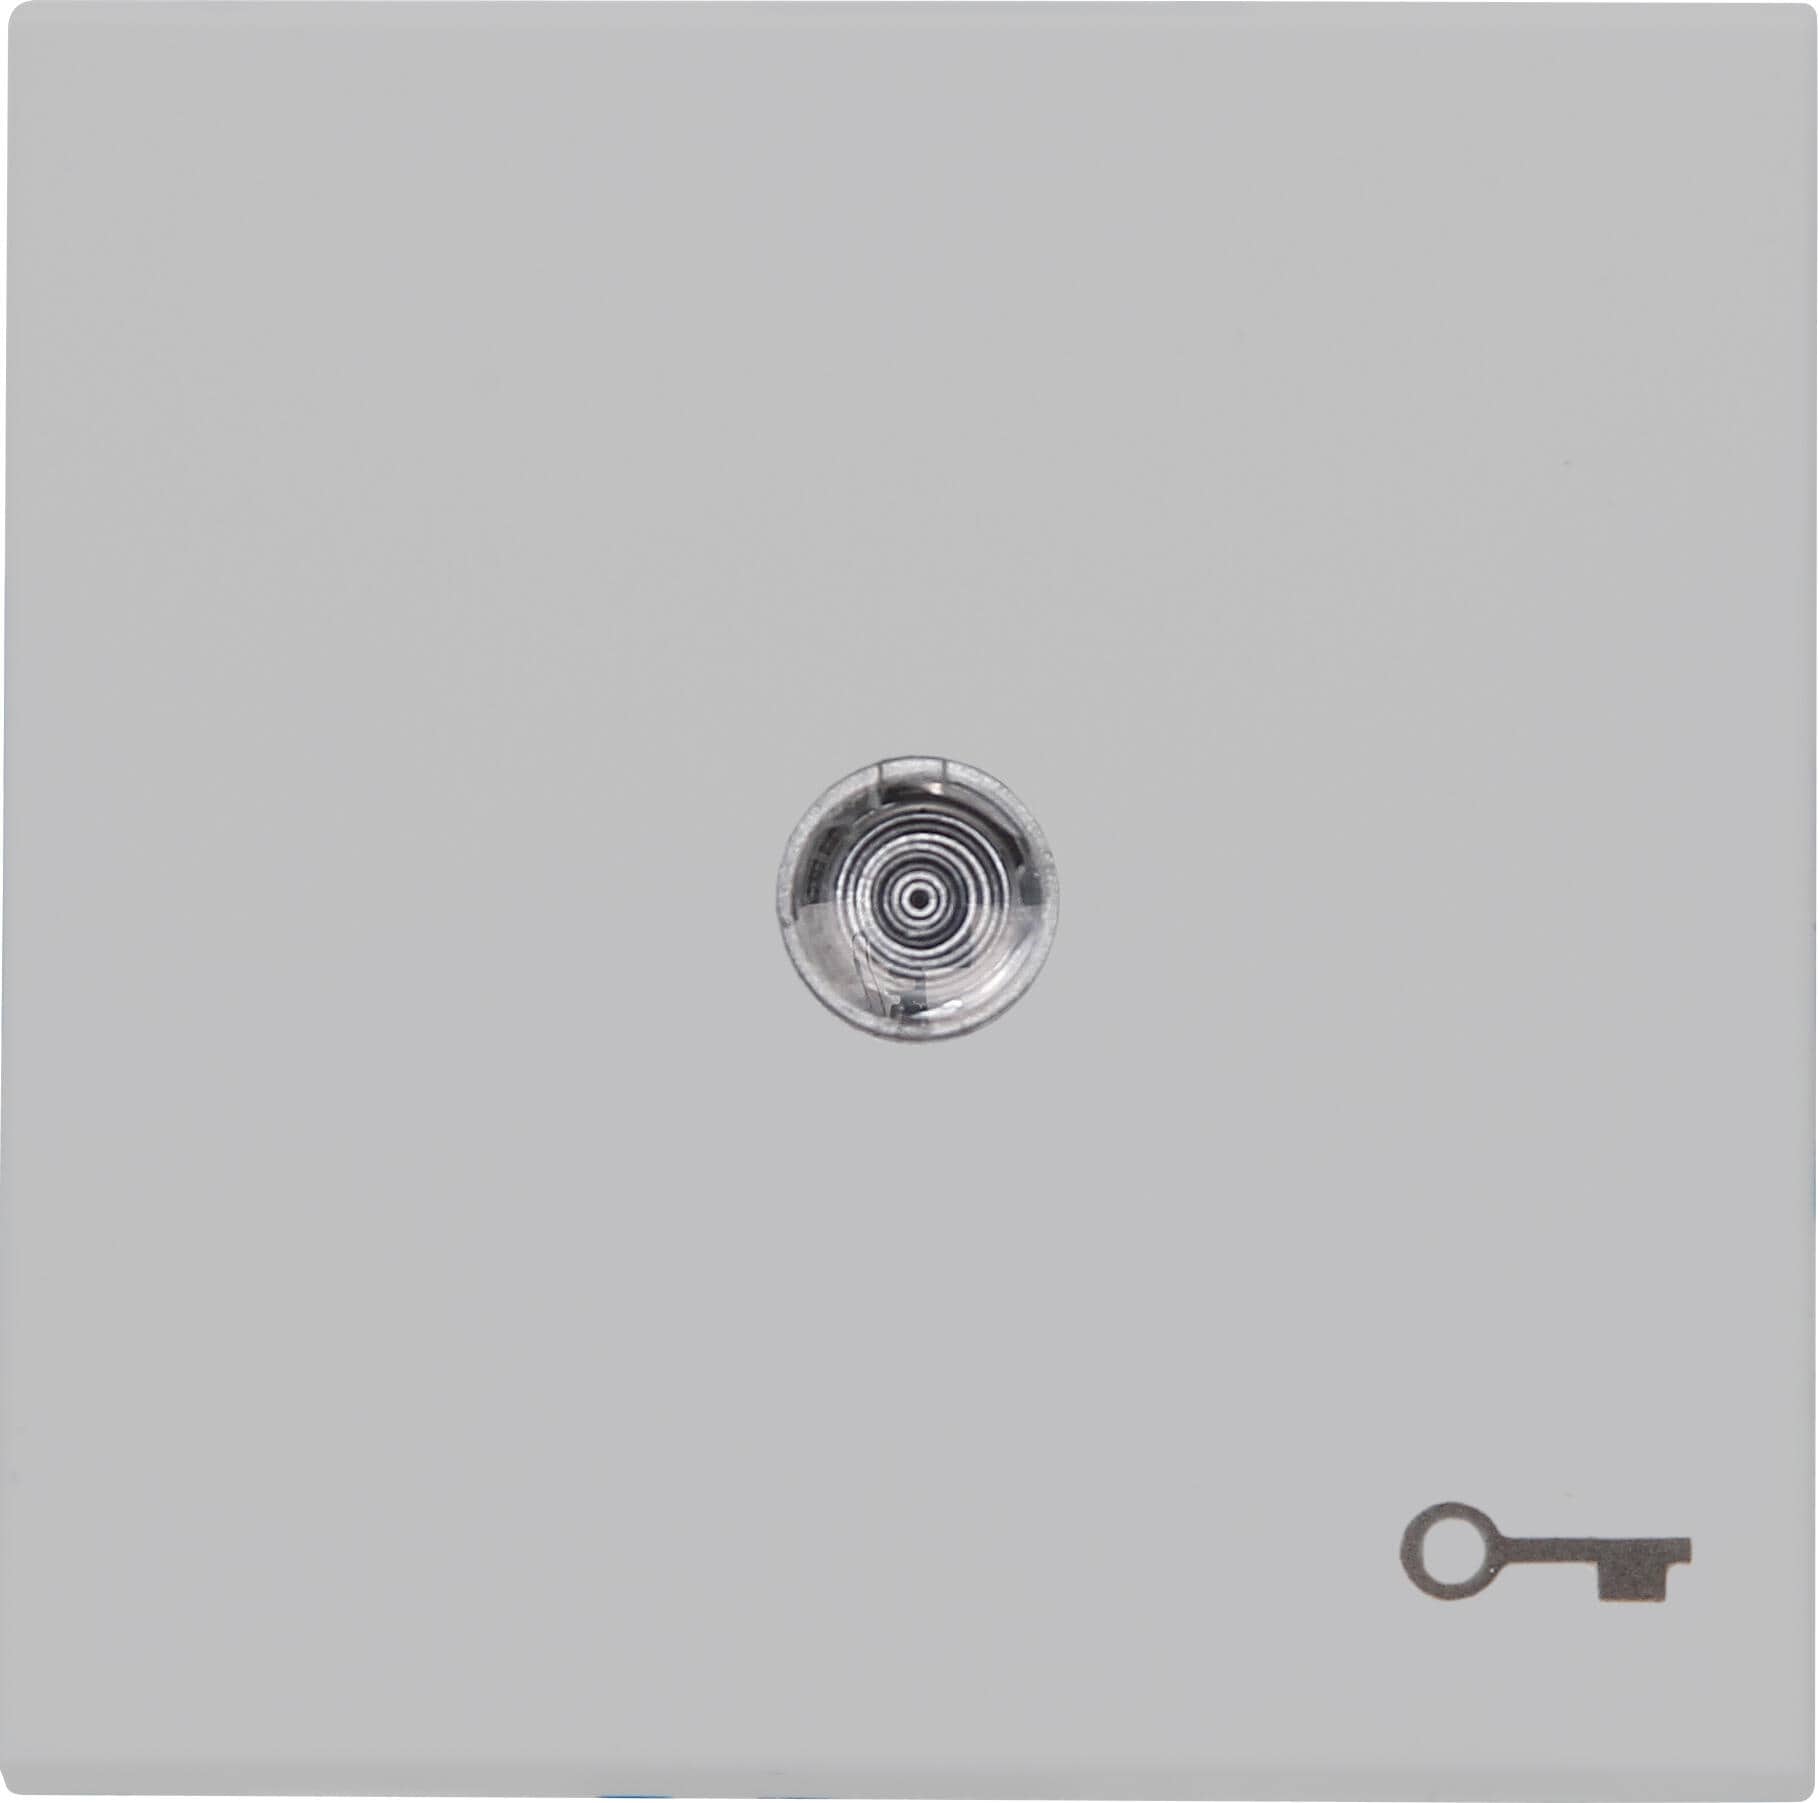 Kopp 490465004 HK07 - Flächenwippe mit Linse und Symbol "Schlüssel", Farbe: grau matt